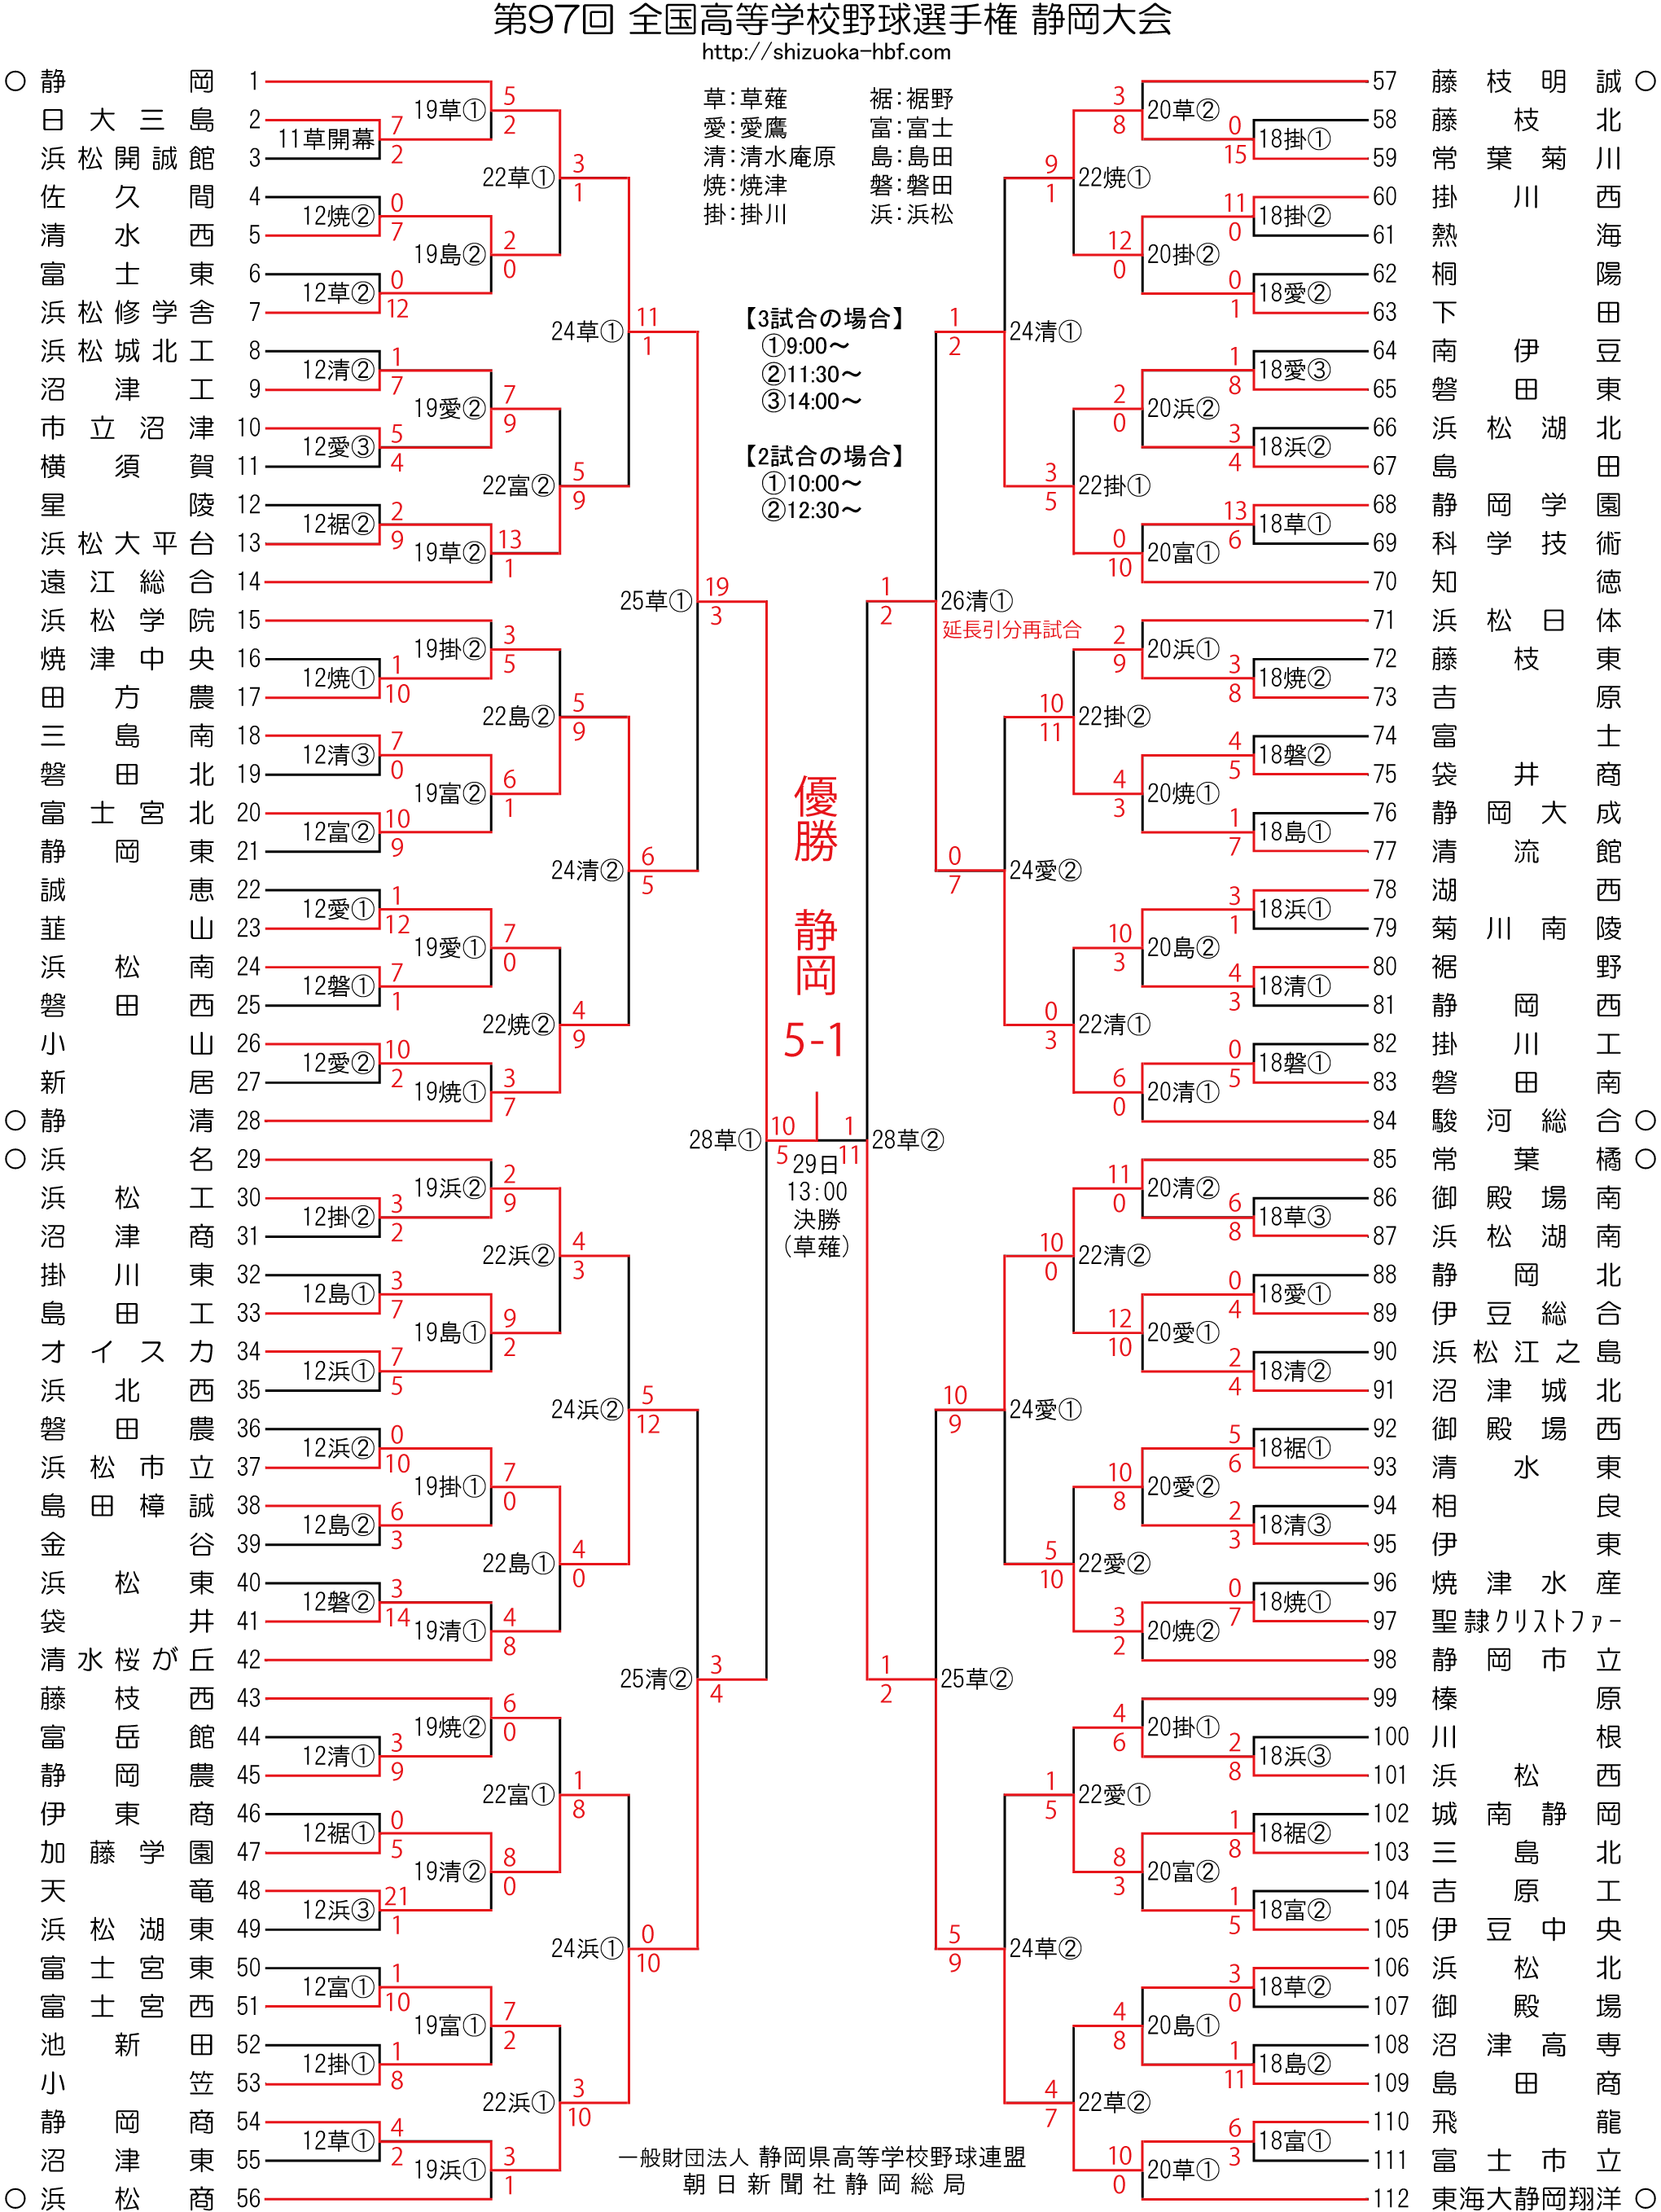 2015年トーナメント表